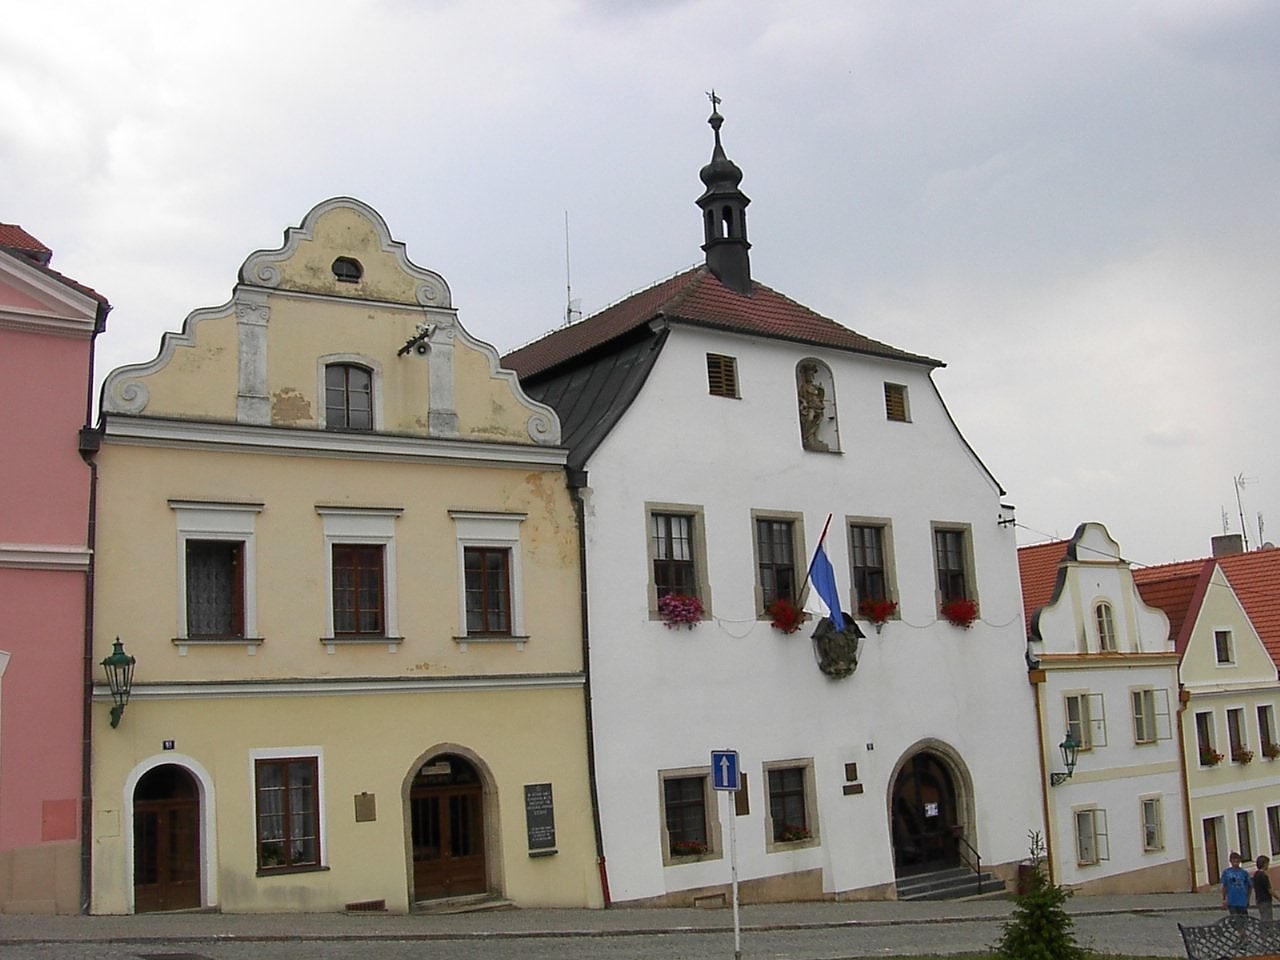 Horšovský Týn, Czech Republic